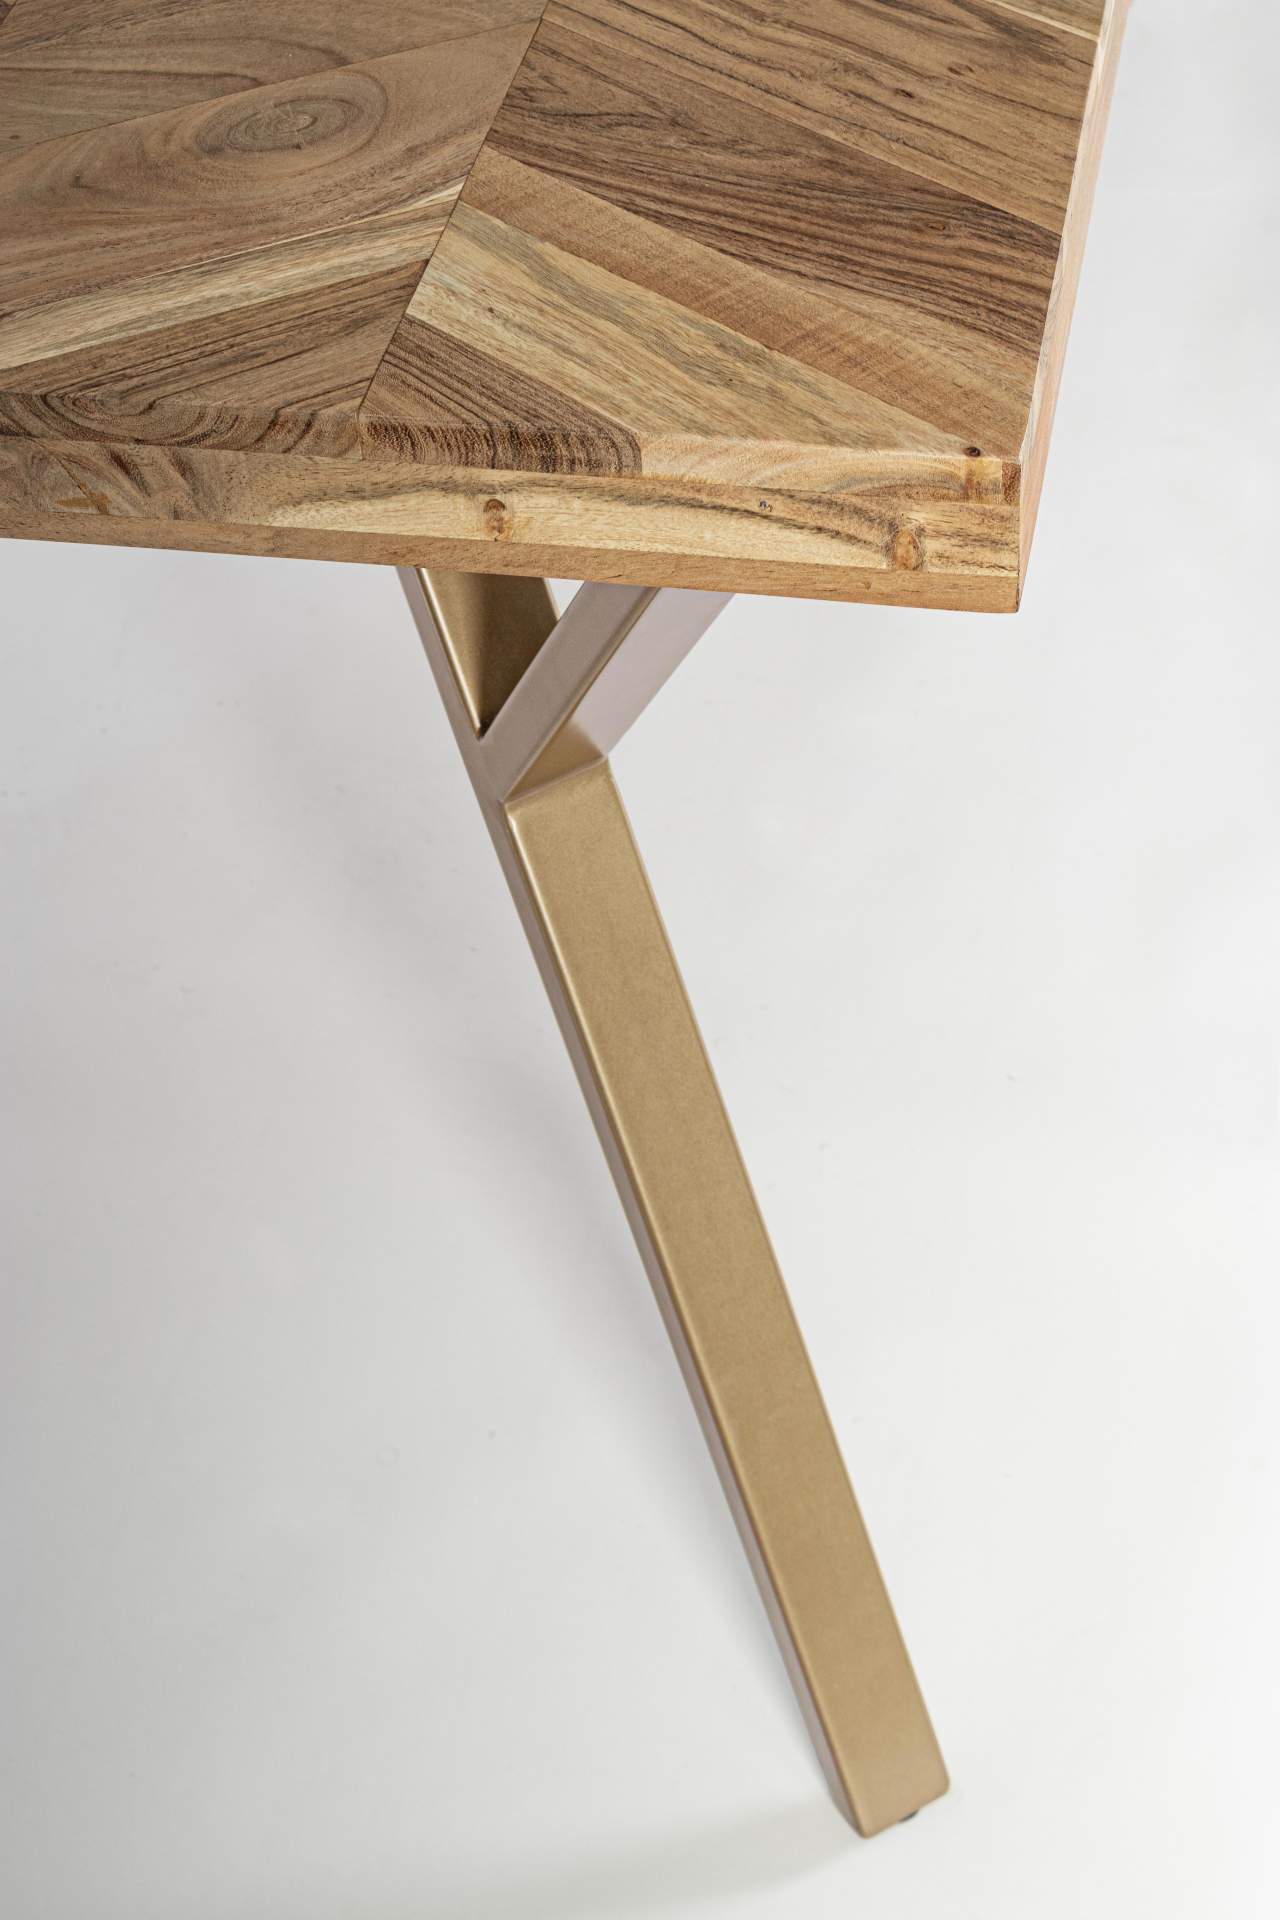 Der Esstisch Raida überzeugt mit seinem moderndem Design. Gefertigt wurde er aus Akazienholz, welches einen natürlichen Farbton besitzt. Das Gestell des Tisches ist aus Metall und ist in eine goldene Farbe. Der Tisch besitzt eine Breite von 160 cm.